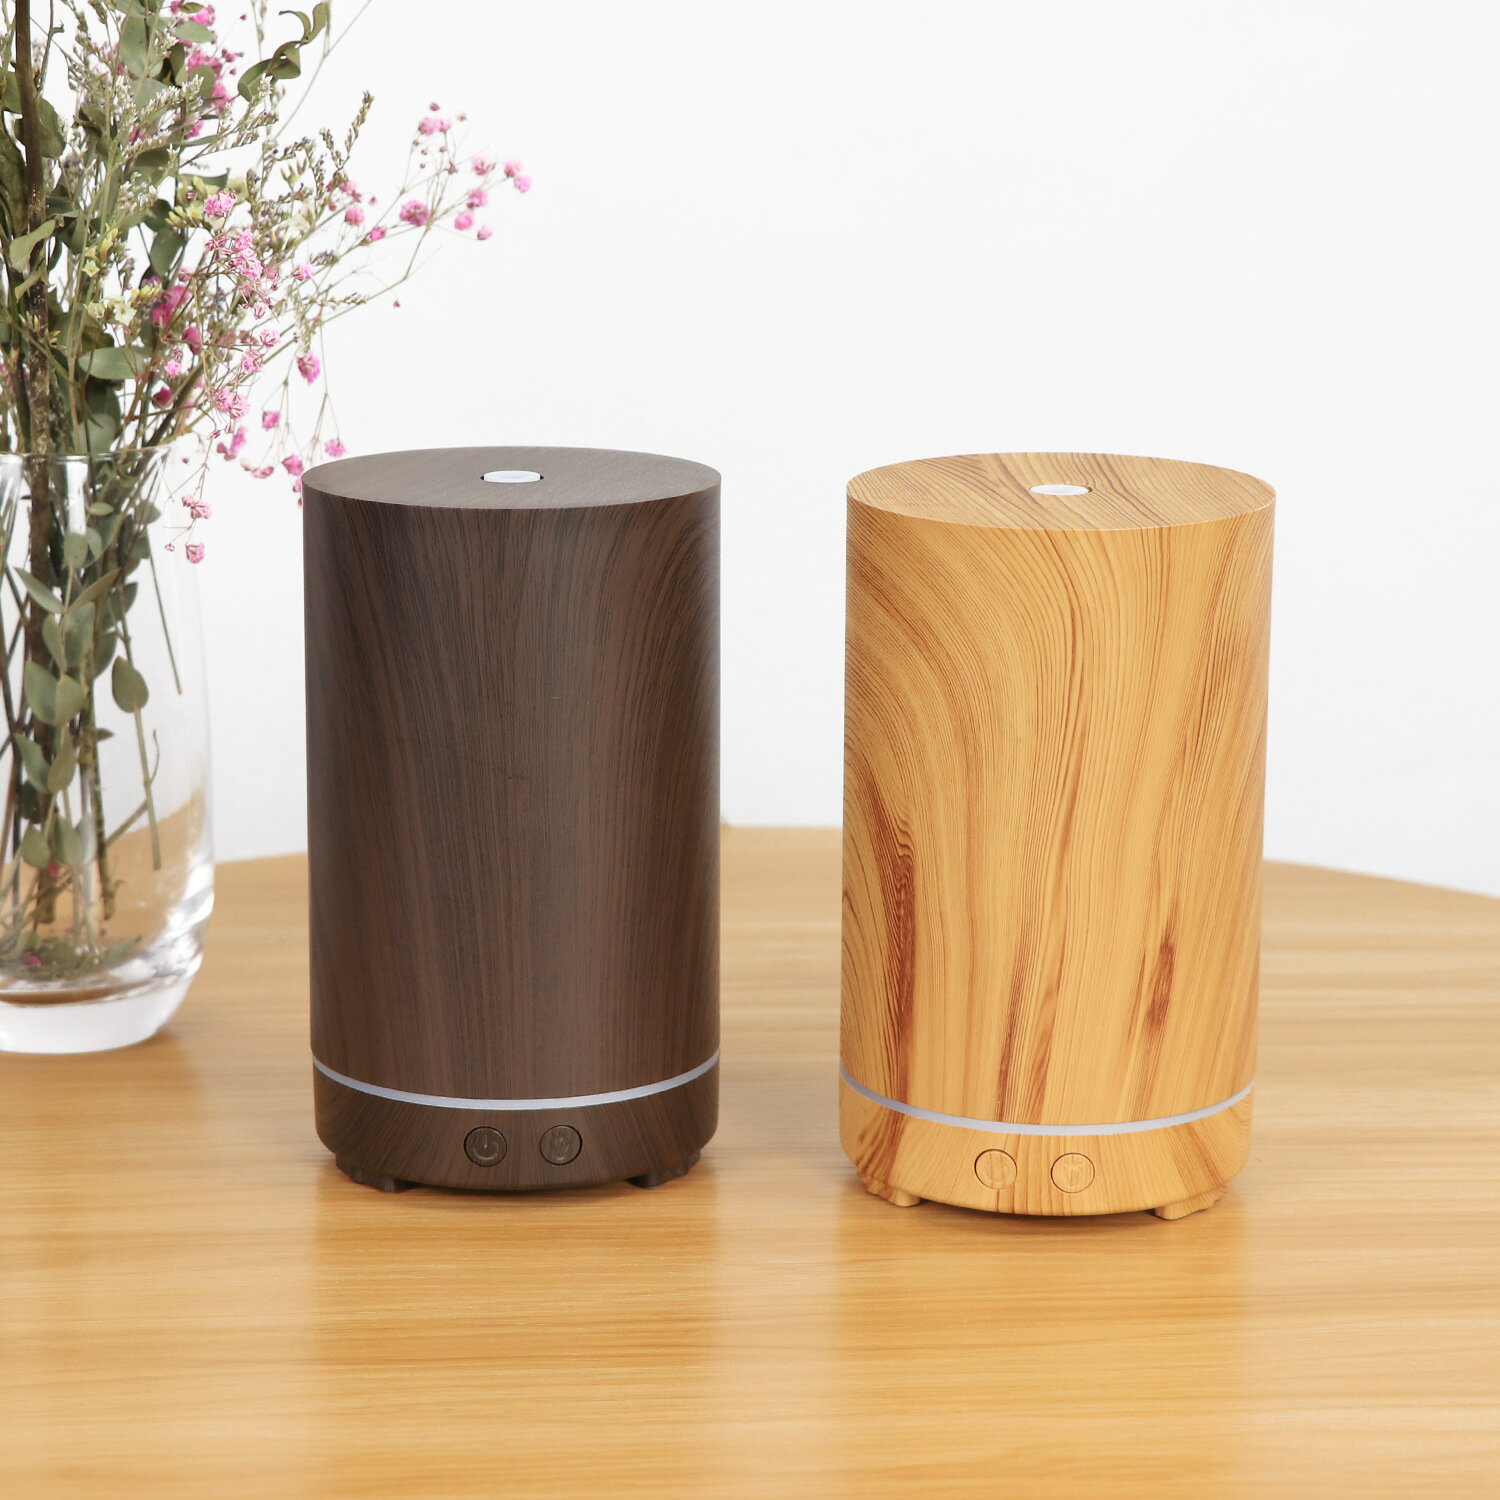 新款創意竹子加濕器家用200ML迷你木紋桌面七彩香薰機加濕器廠家